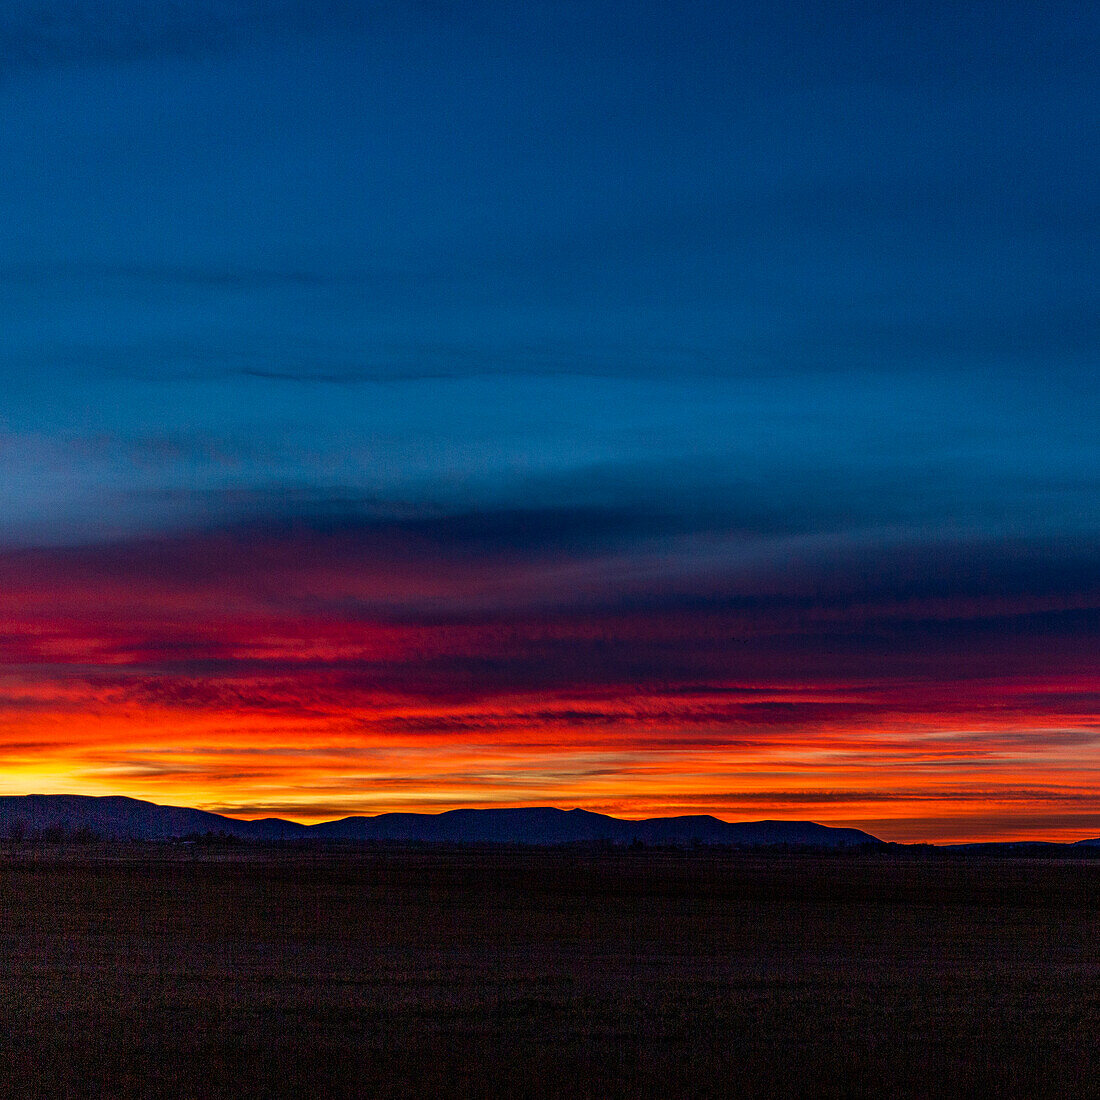 USA, Idaho, Bellevue, Sonnenuntergang Himmel über Ausläufern